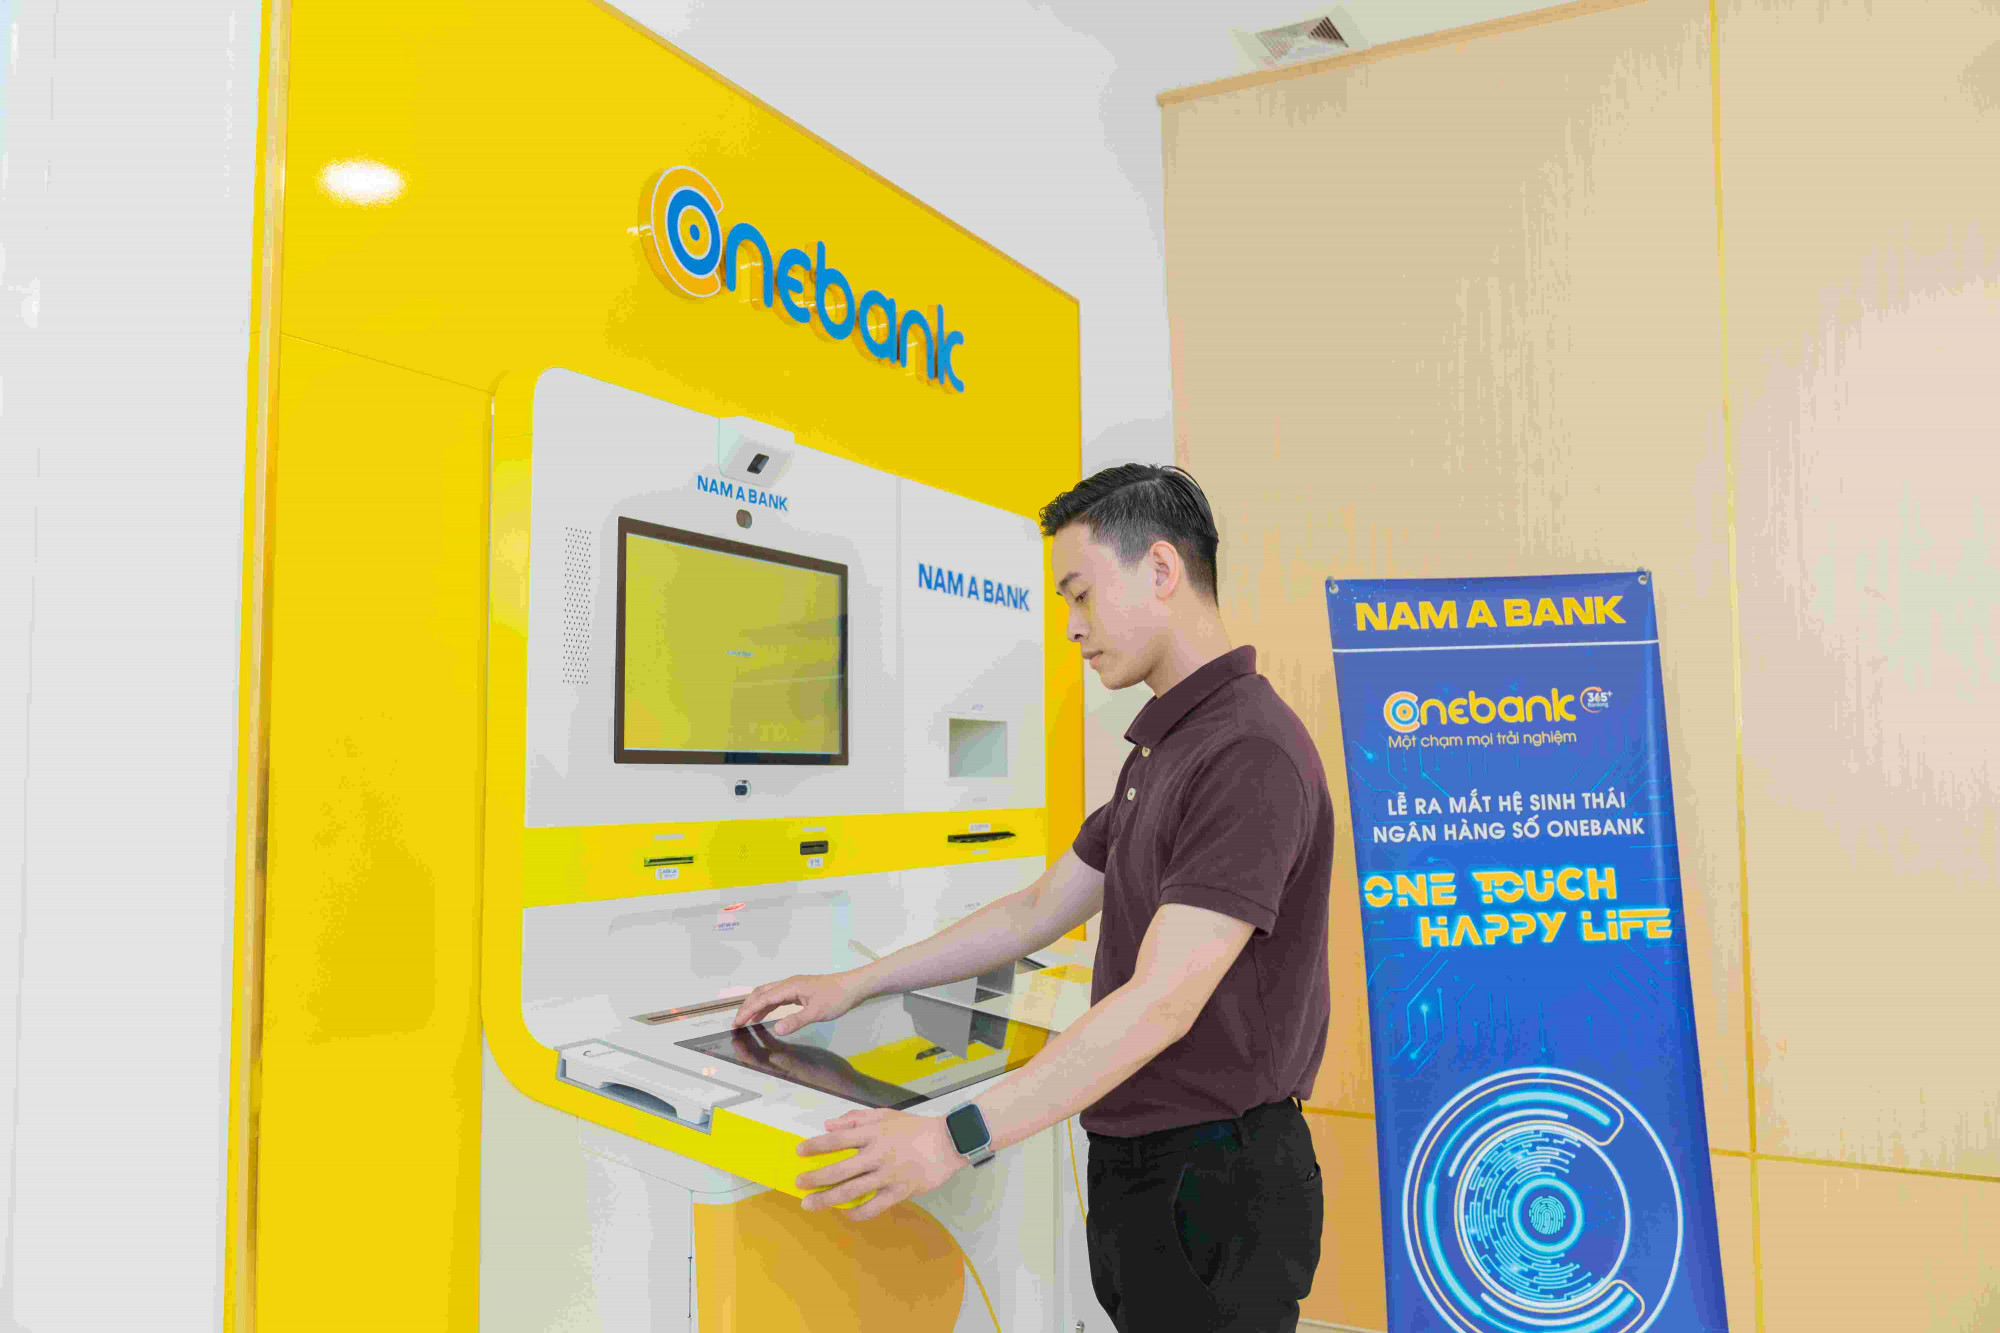 ONEBANK mang đến những trải nghiệm vượt trội cho khách hàng - Ảnh: Nam A Bank